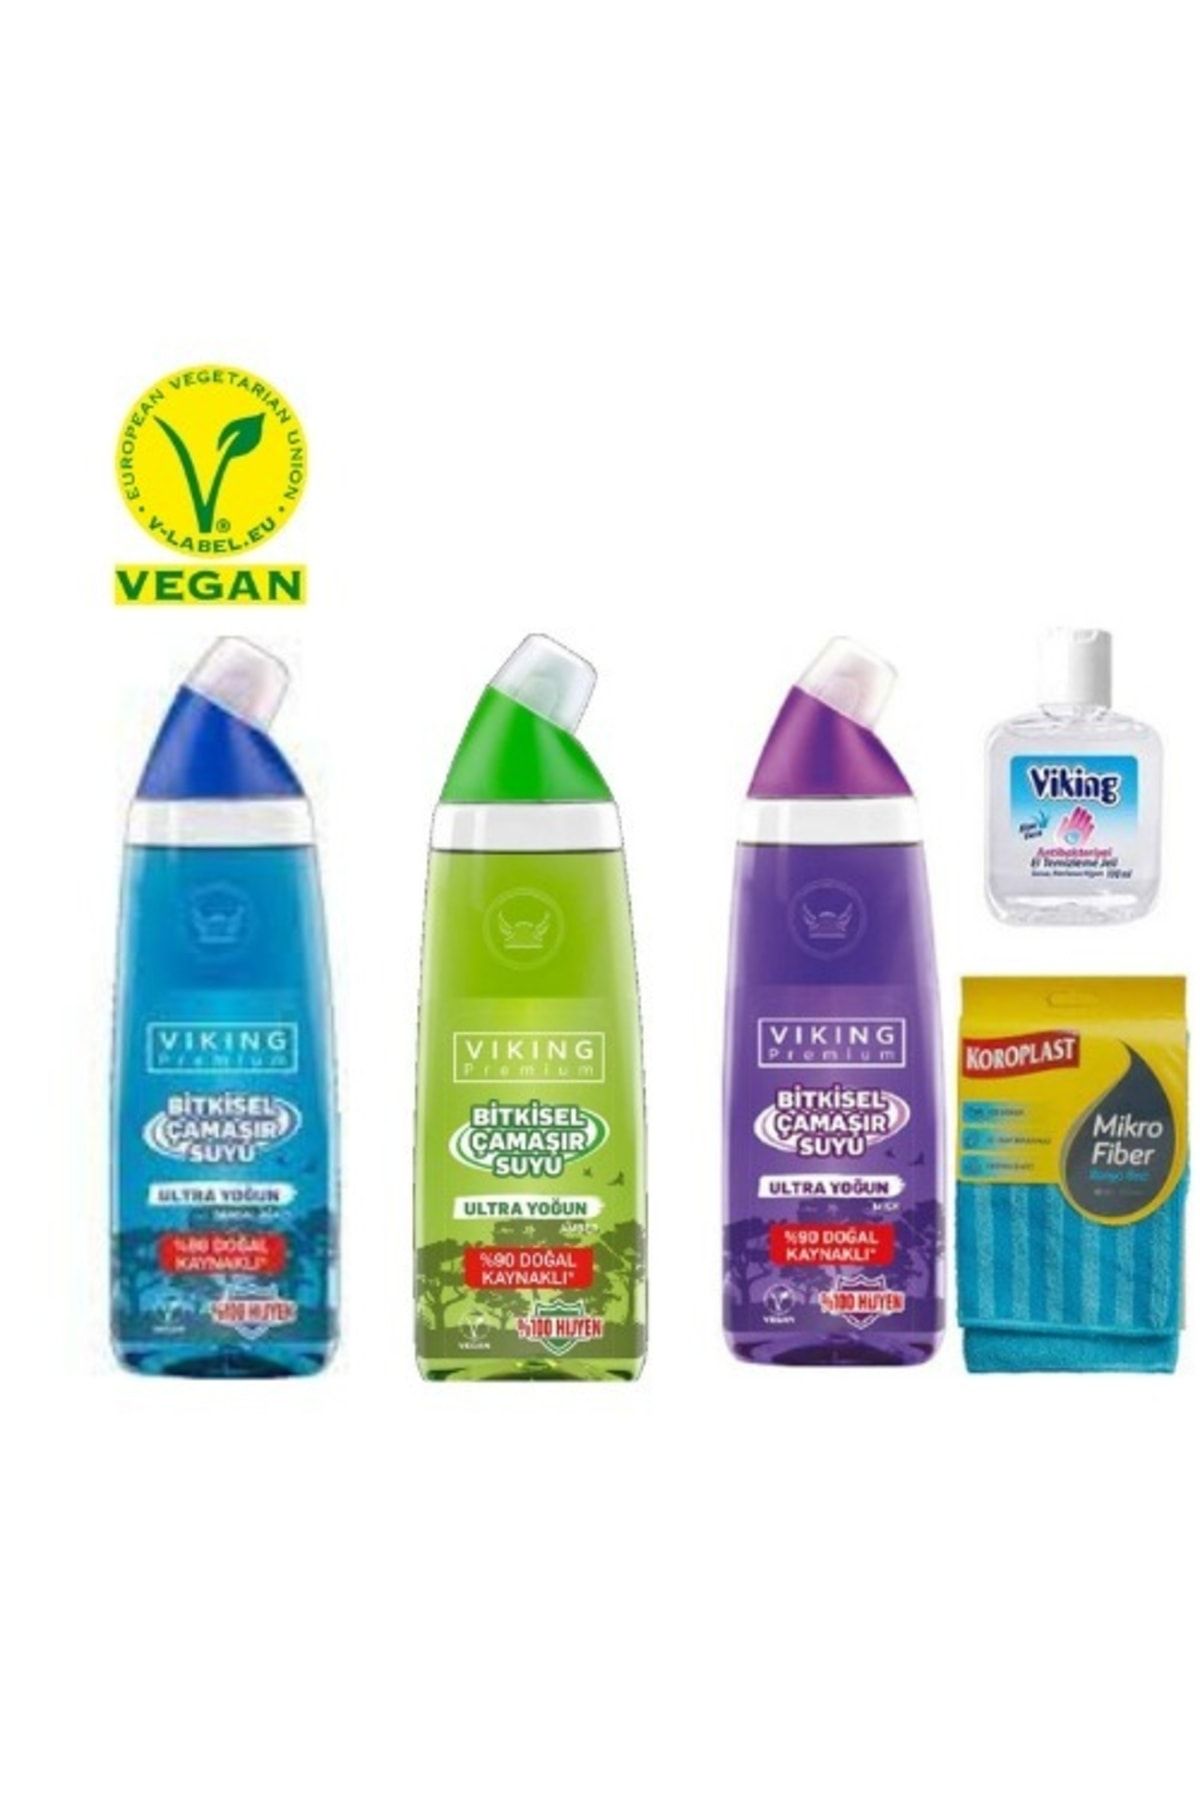 Viking Premium Bitkisel Çamaşır Suyu Ultra Yoğun Vegan 3 Adet Koroplast Banyobezi Ve Jel Hediyeli